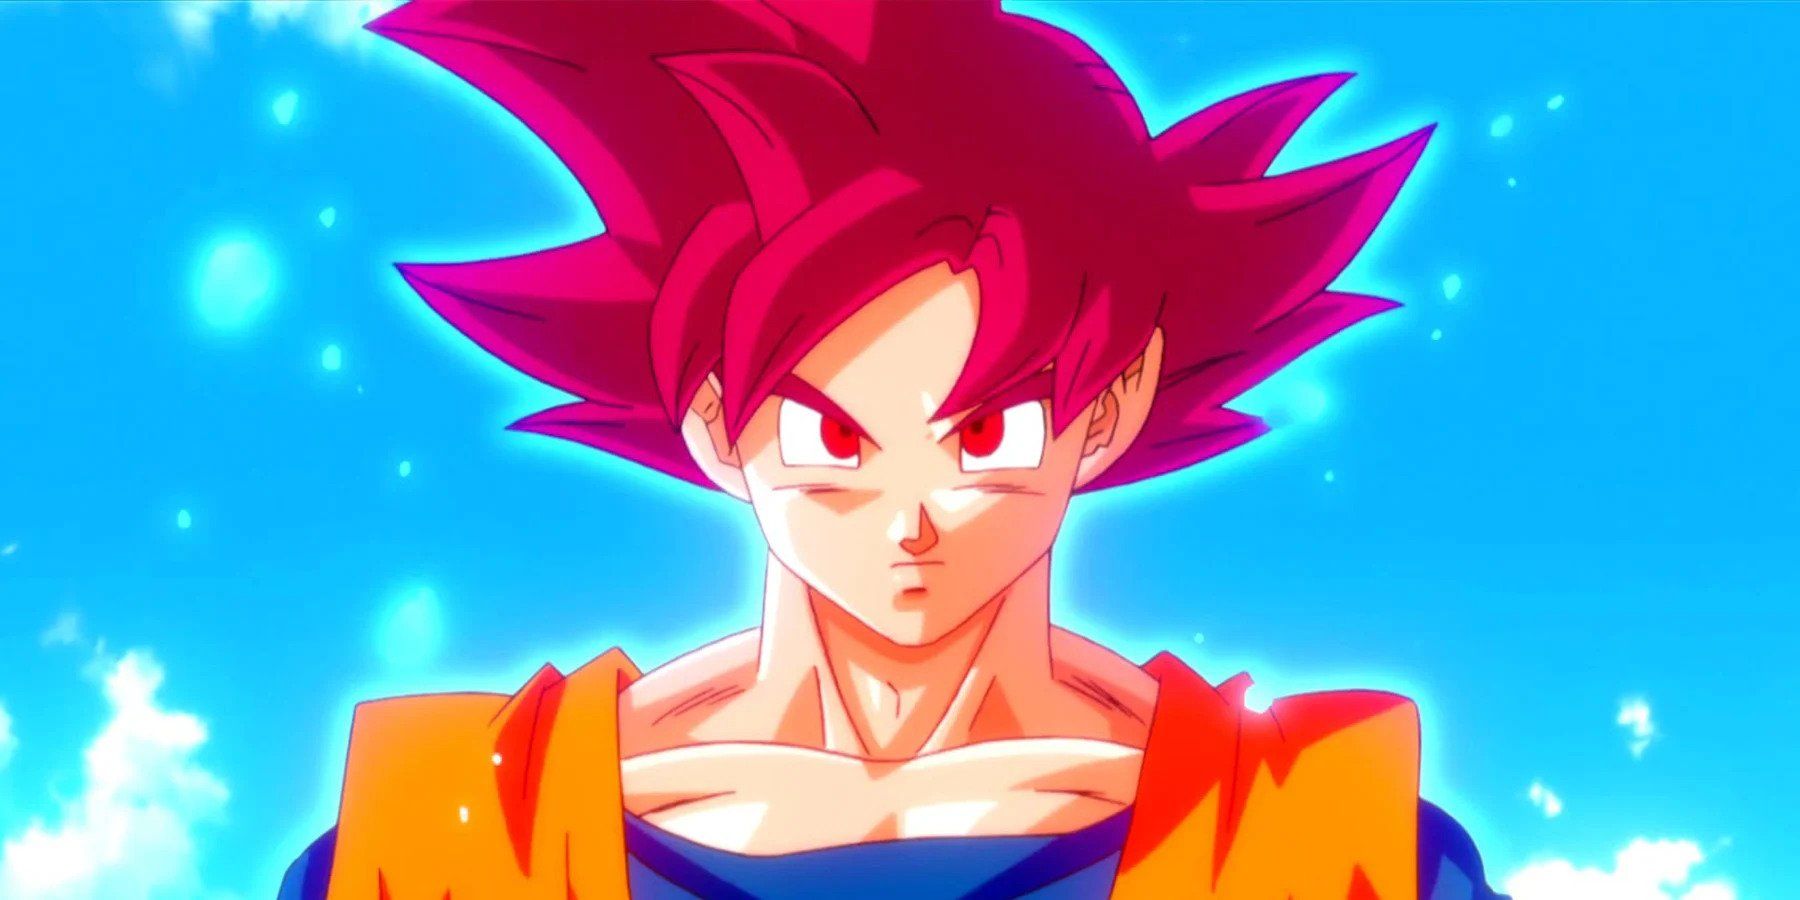 Super Saiyan God Goku First Apperance in Battle of Gods